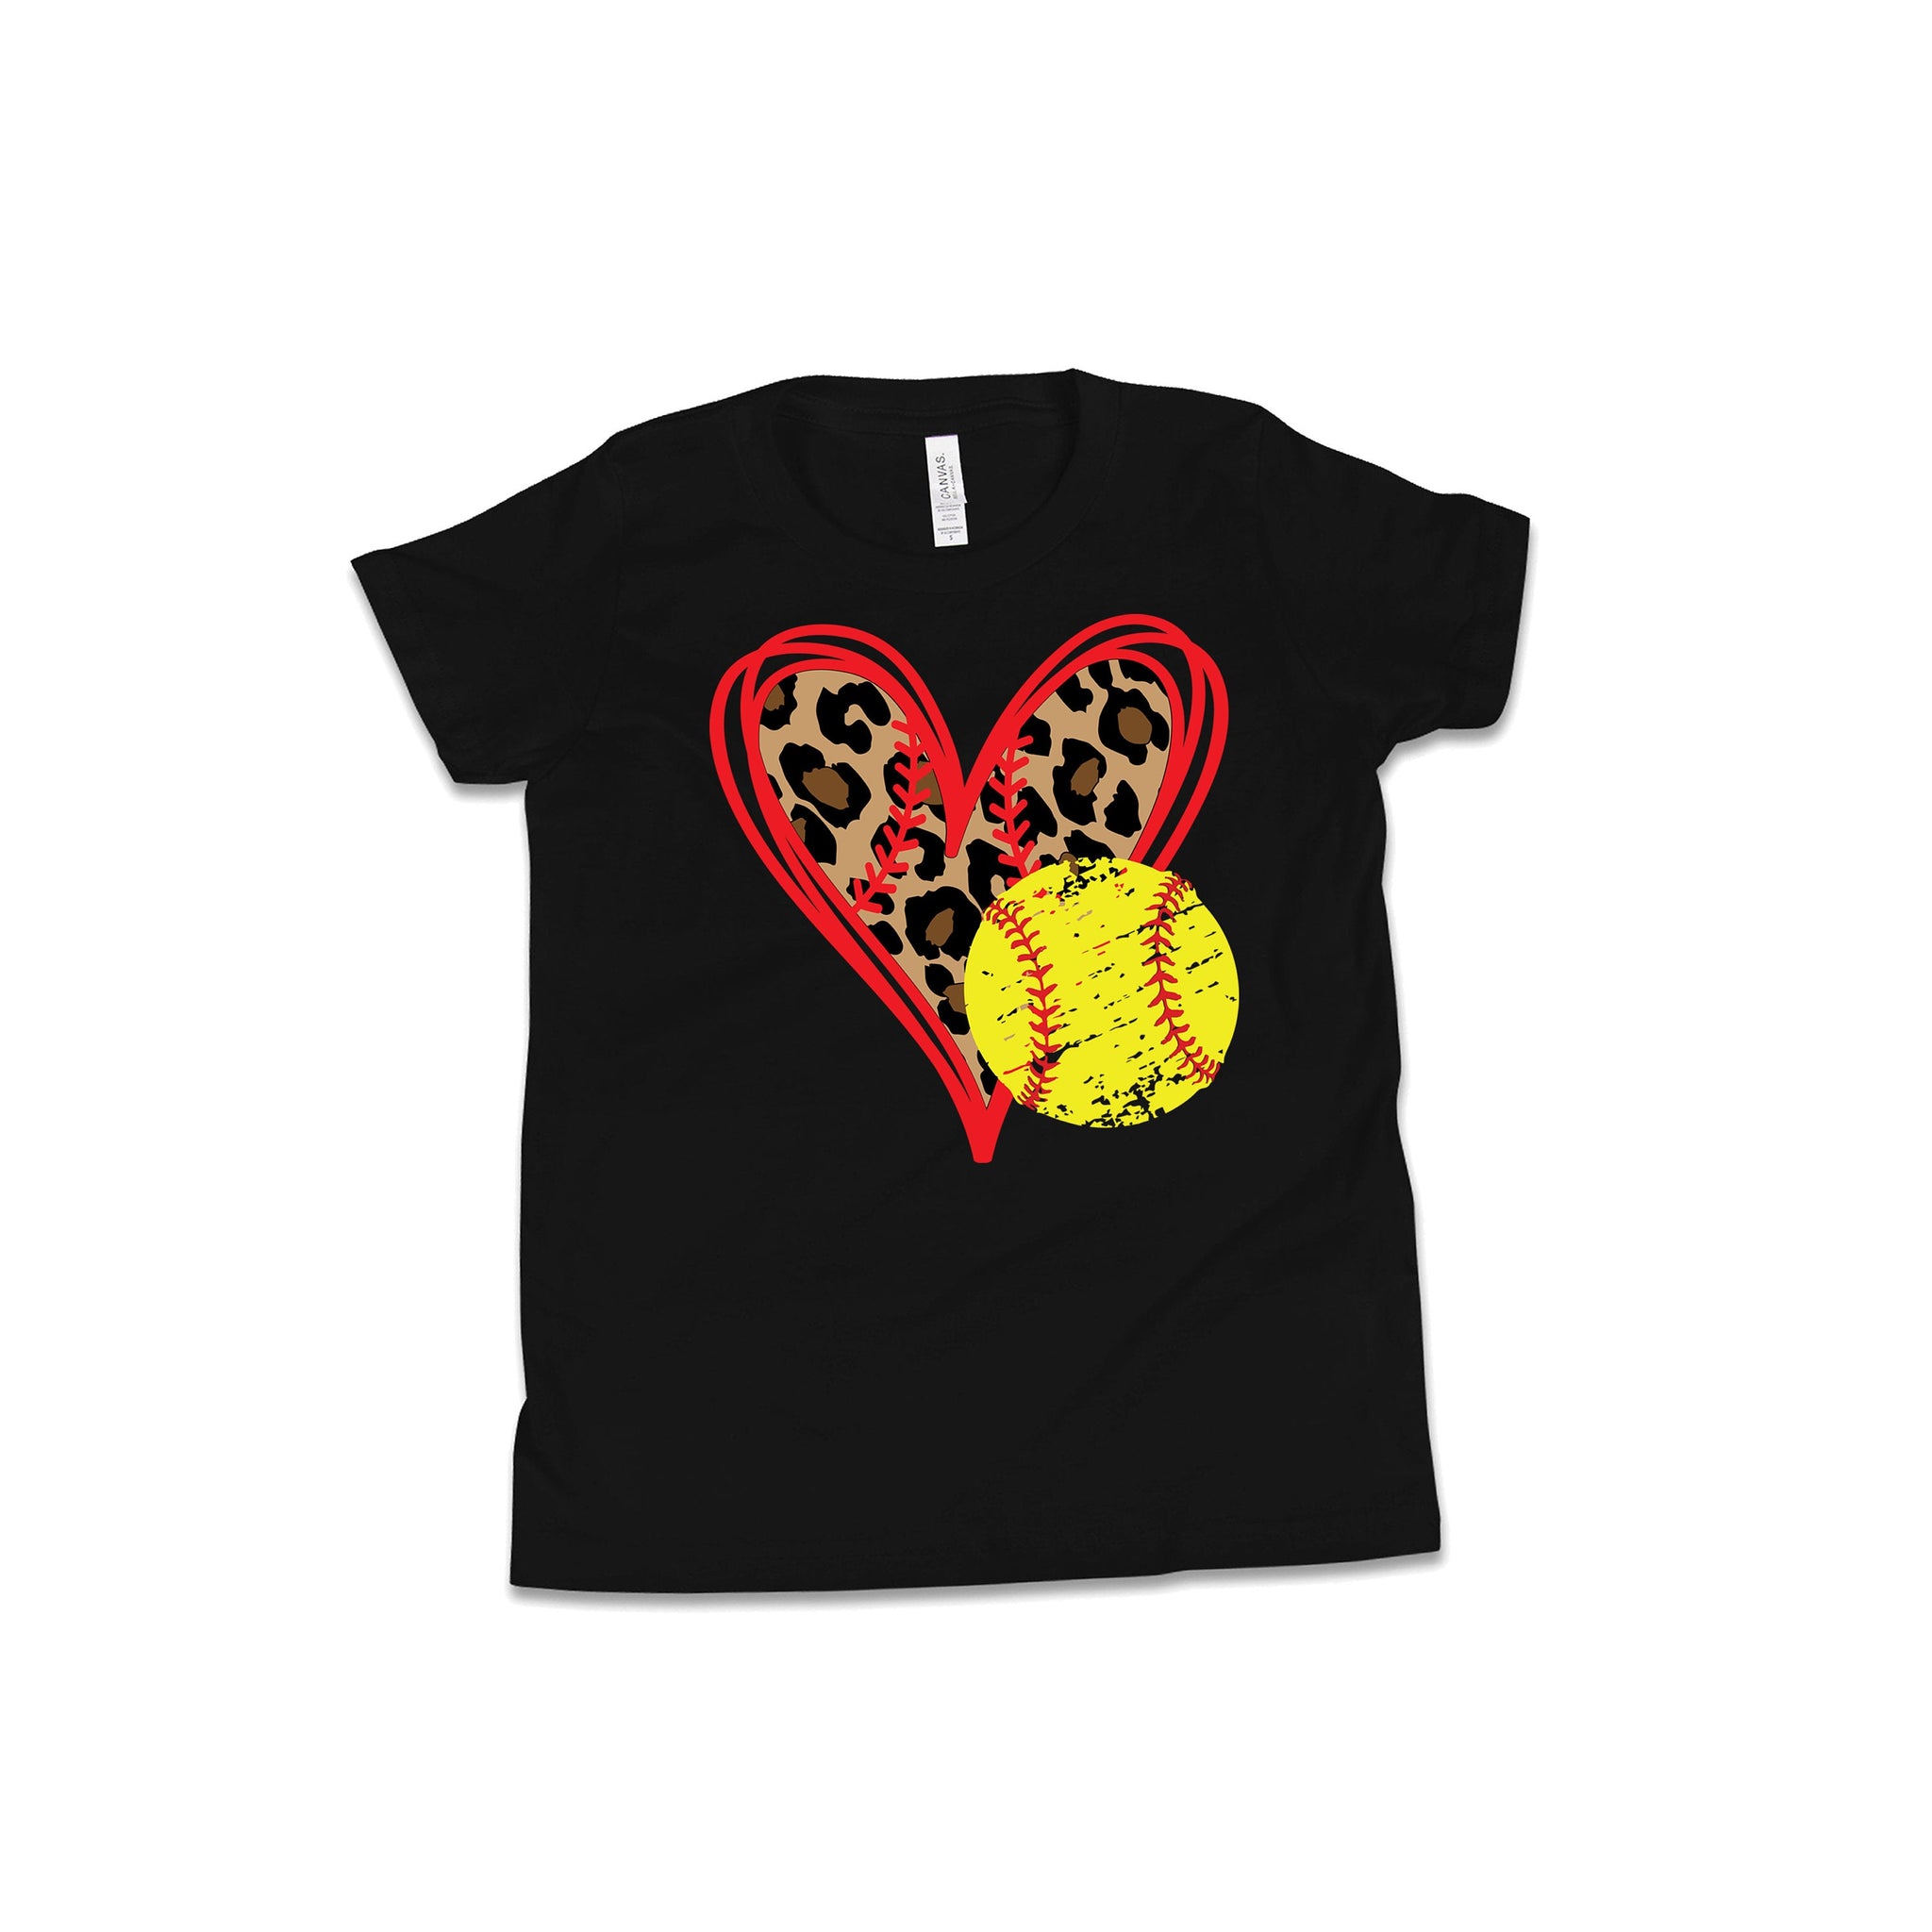 Softball Shirt